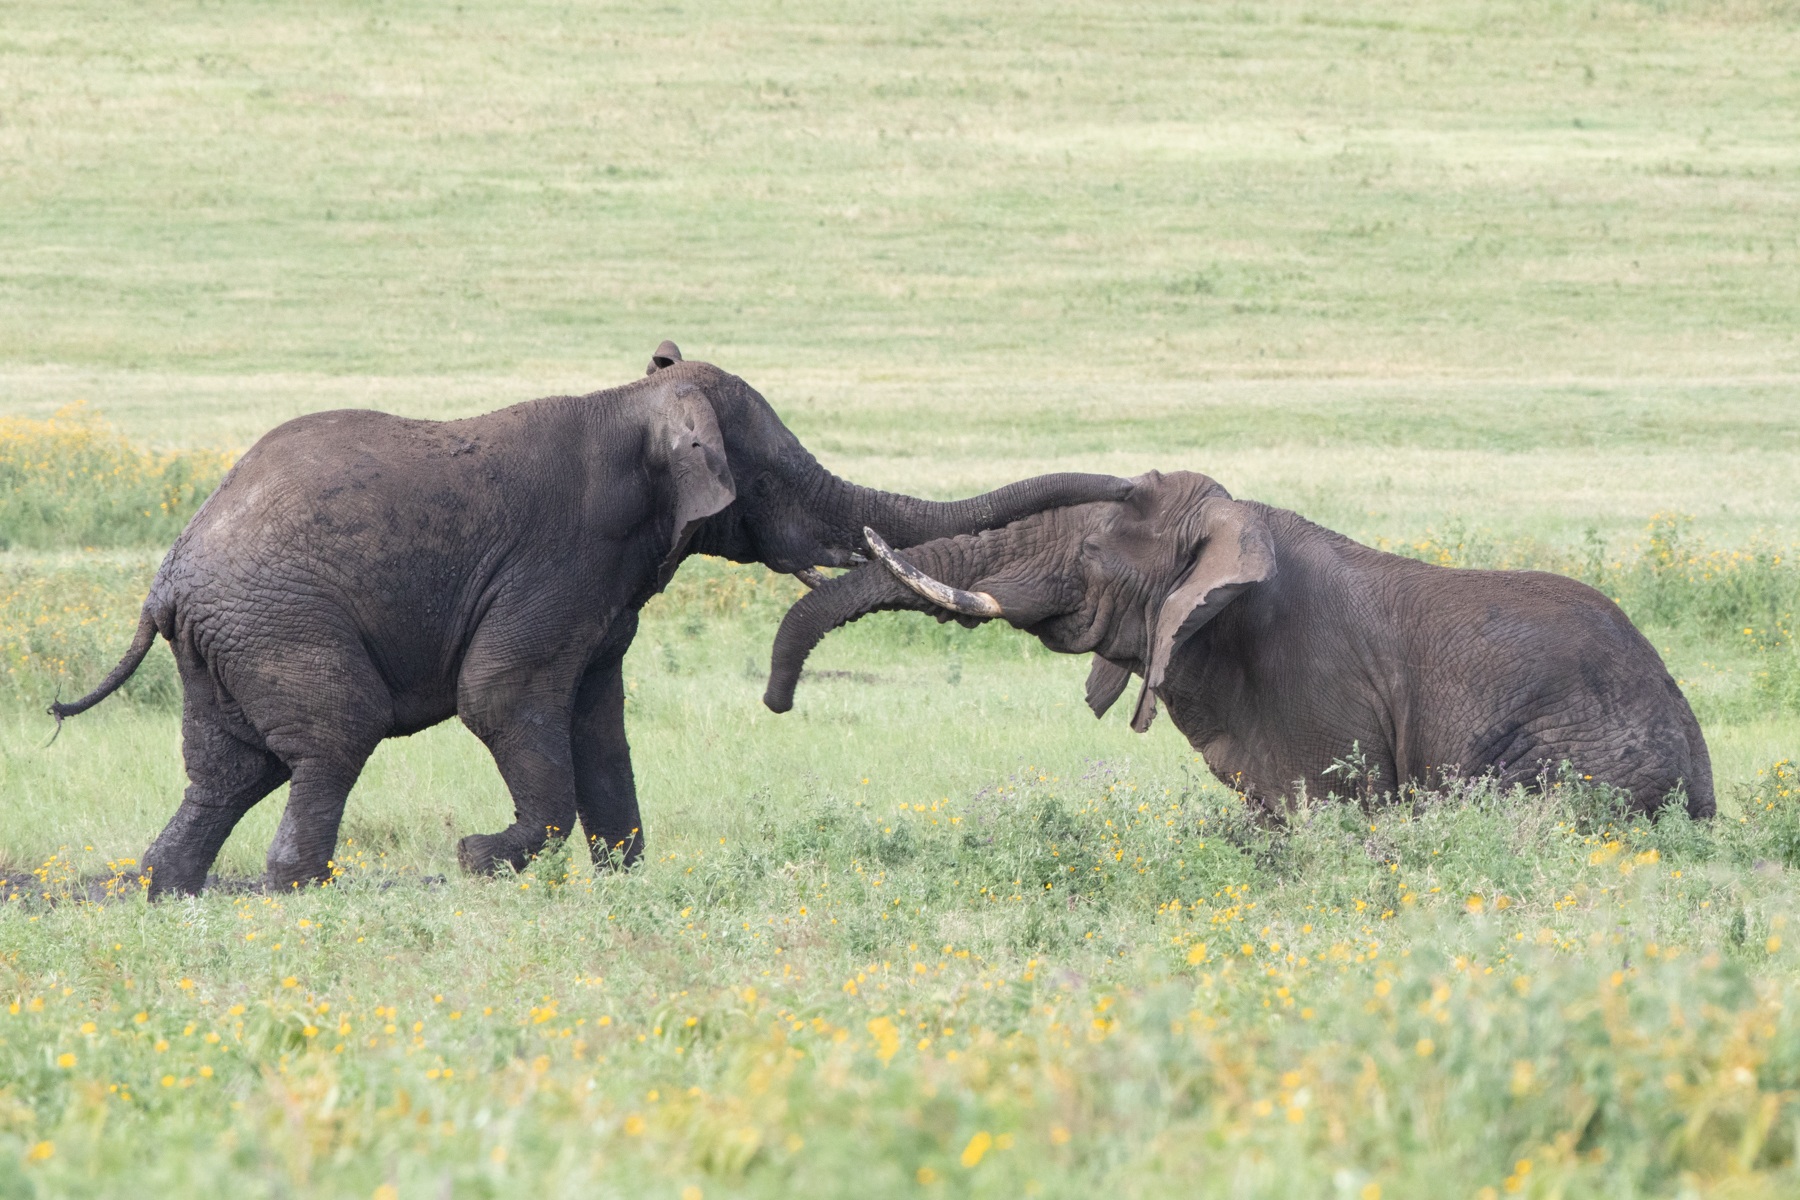 Male elephants fighting in Ngorongoro